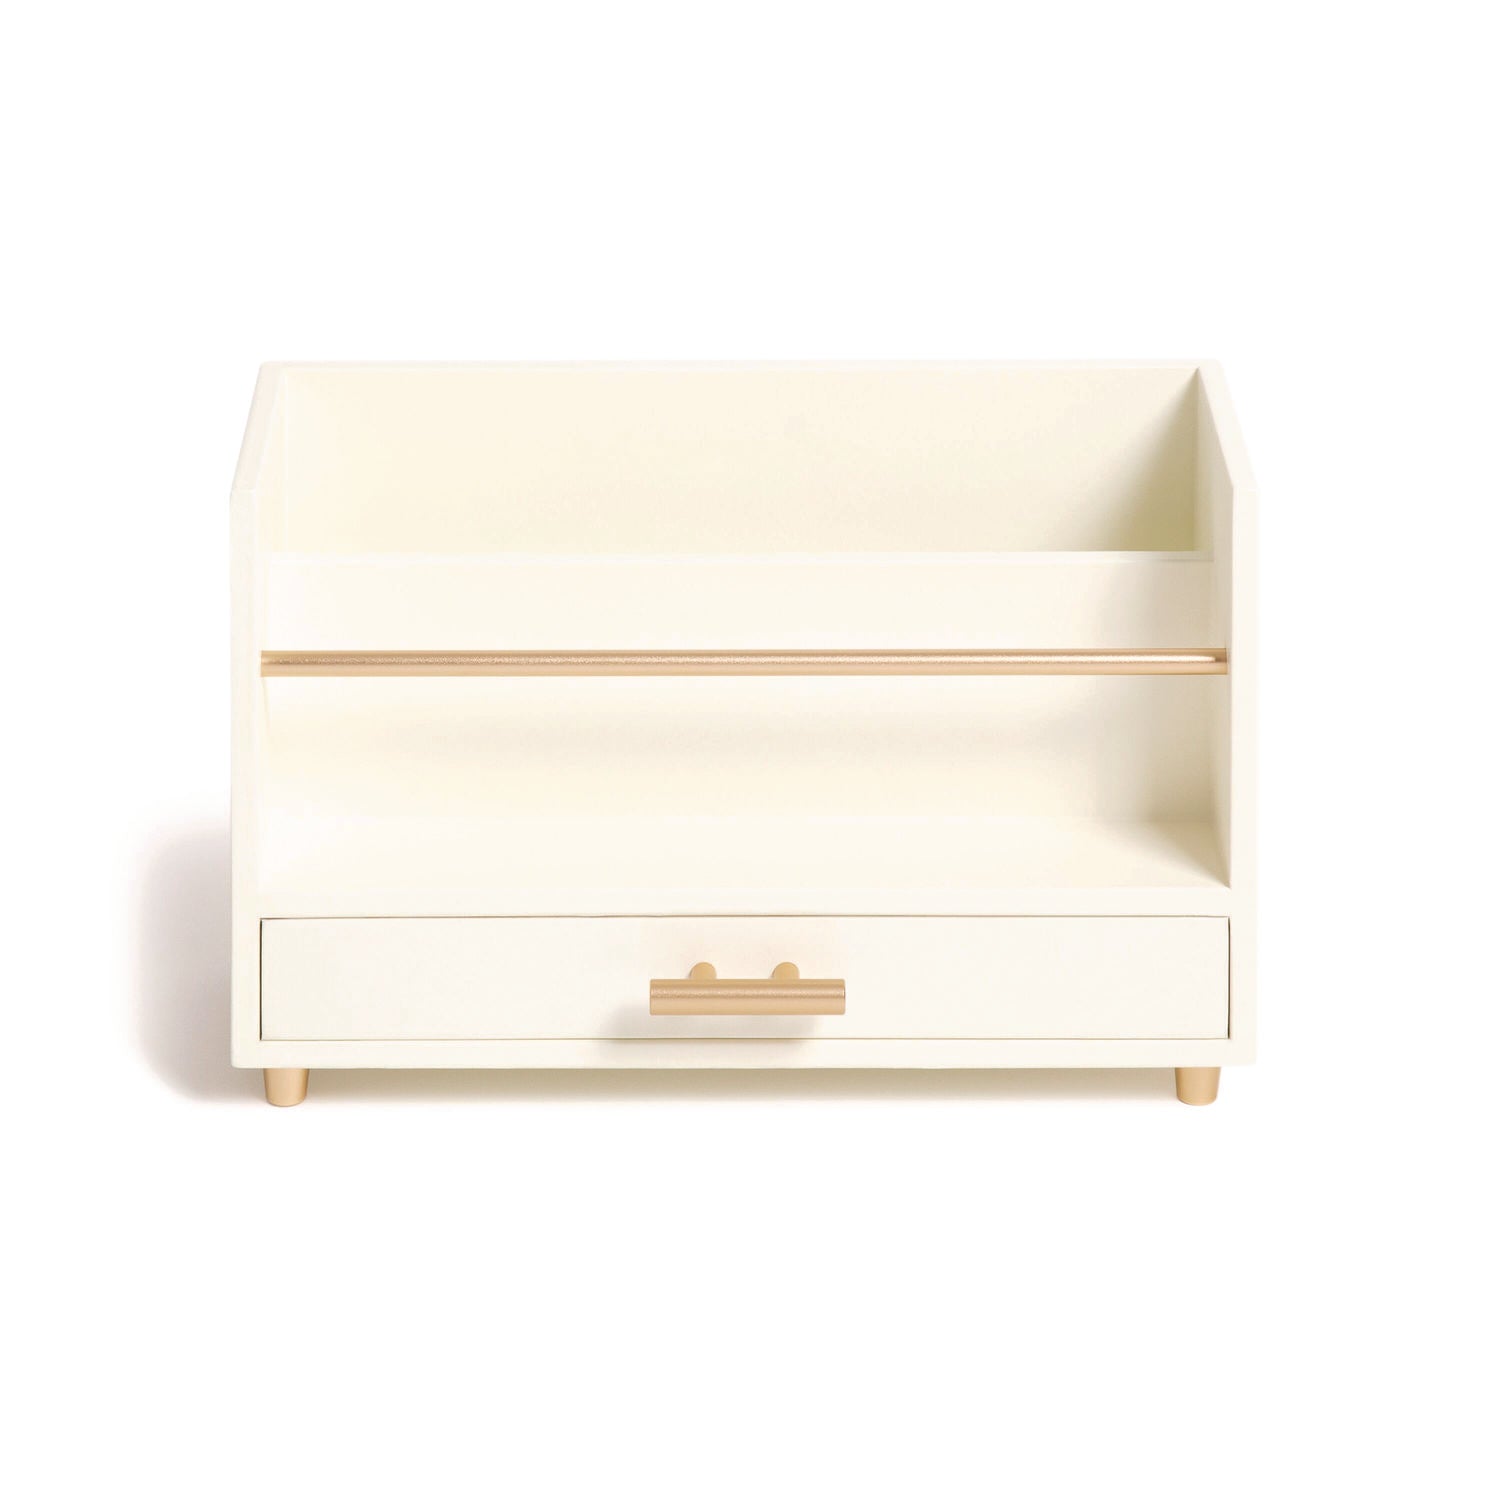 juliet-desk-organizer-3-compartments-1-drawer-95-x-42-x-49-white-gold-wood-metal_ubr3464u0312 - 1